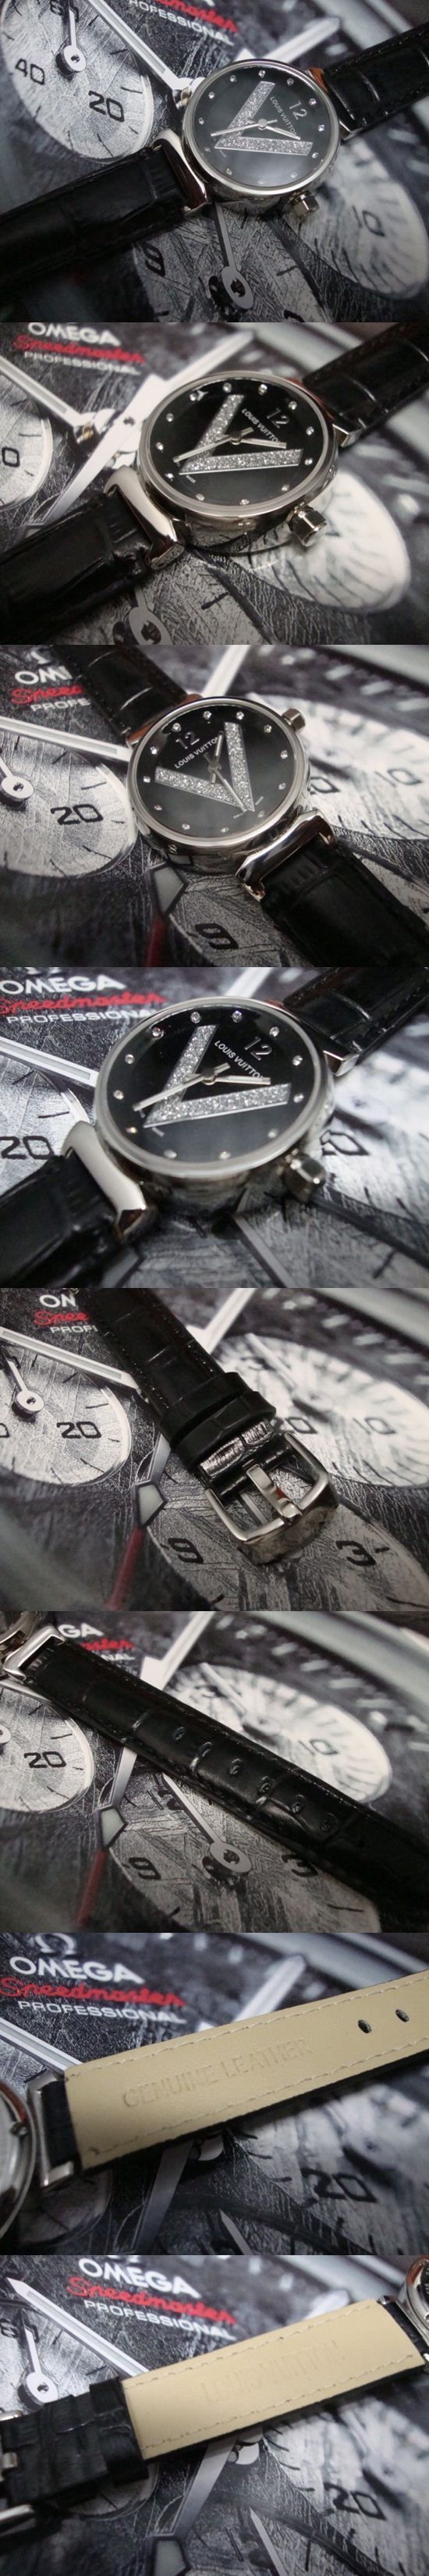 おしゃれなブランド時計がLOUIS-VUITTON-ルイヴィトン腕時計 ルイヴィトン 男/女性用腕時計 LOUIS-VUITTON-N-001Aを提供します.